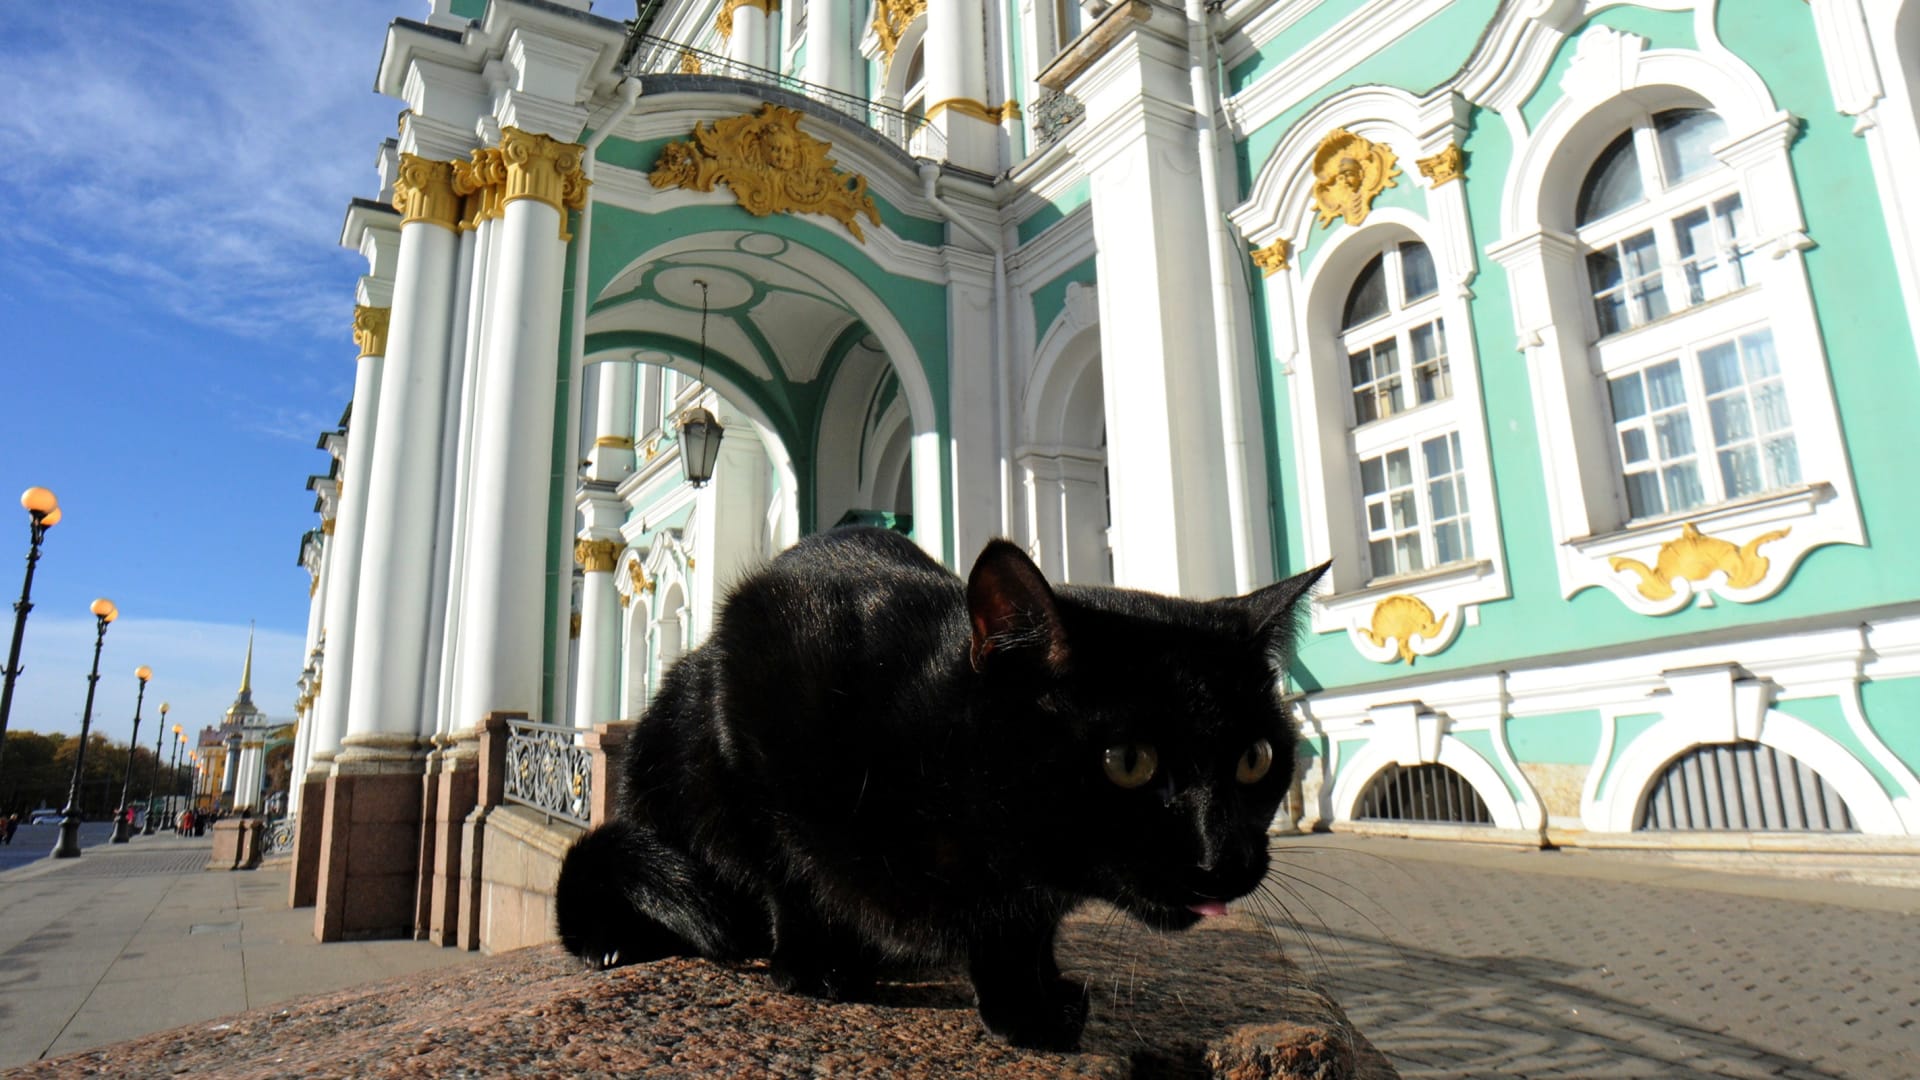 شاهد..هذه الأماكن السياحية الأقرب إلى قلب بوتين في روسيا